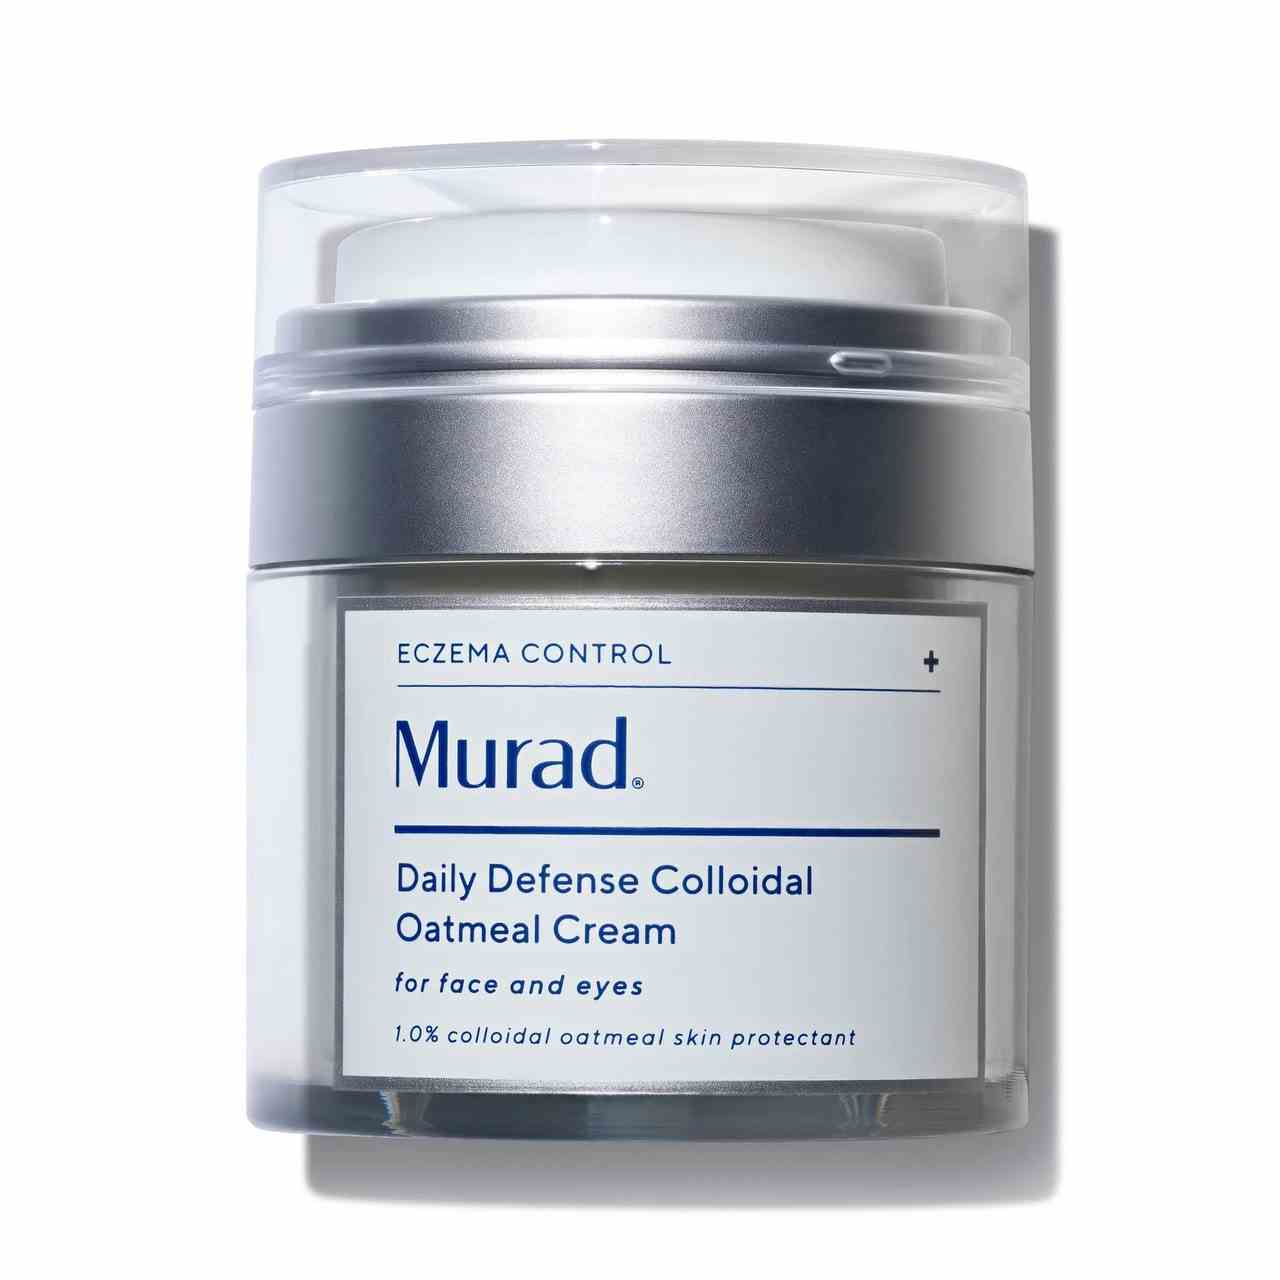 Murad Daily Defense Colloidal Oatmeal Cream Silberdose mit durchsichtigem Deckel und weißem Pressspender auf weißem Hintergrund